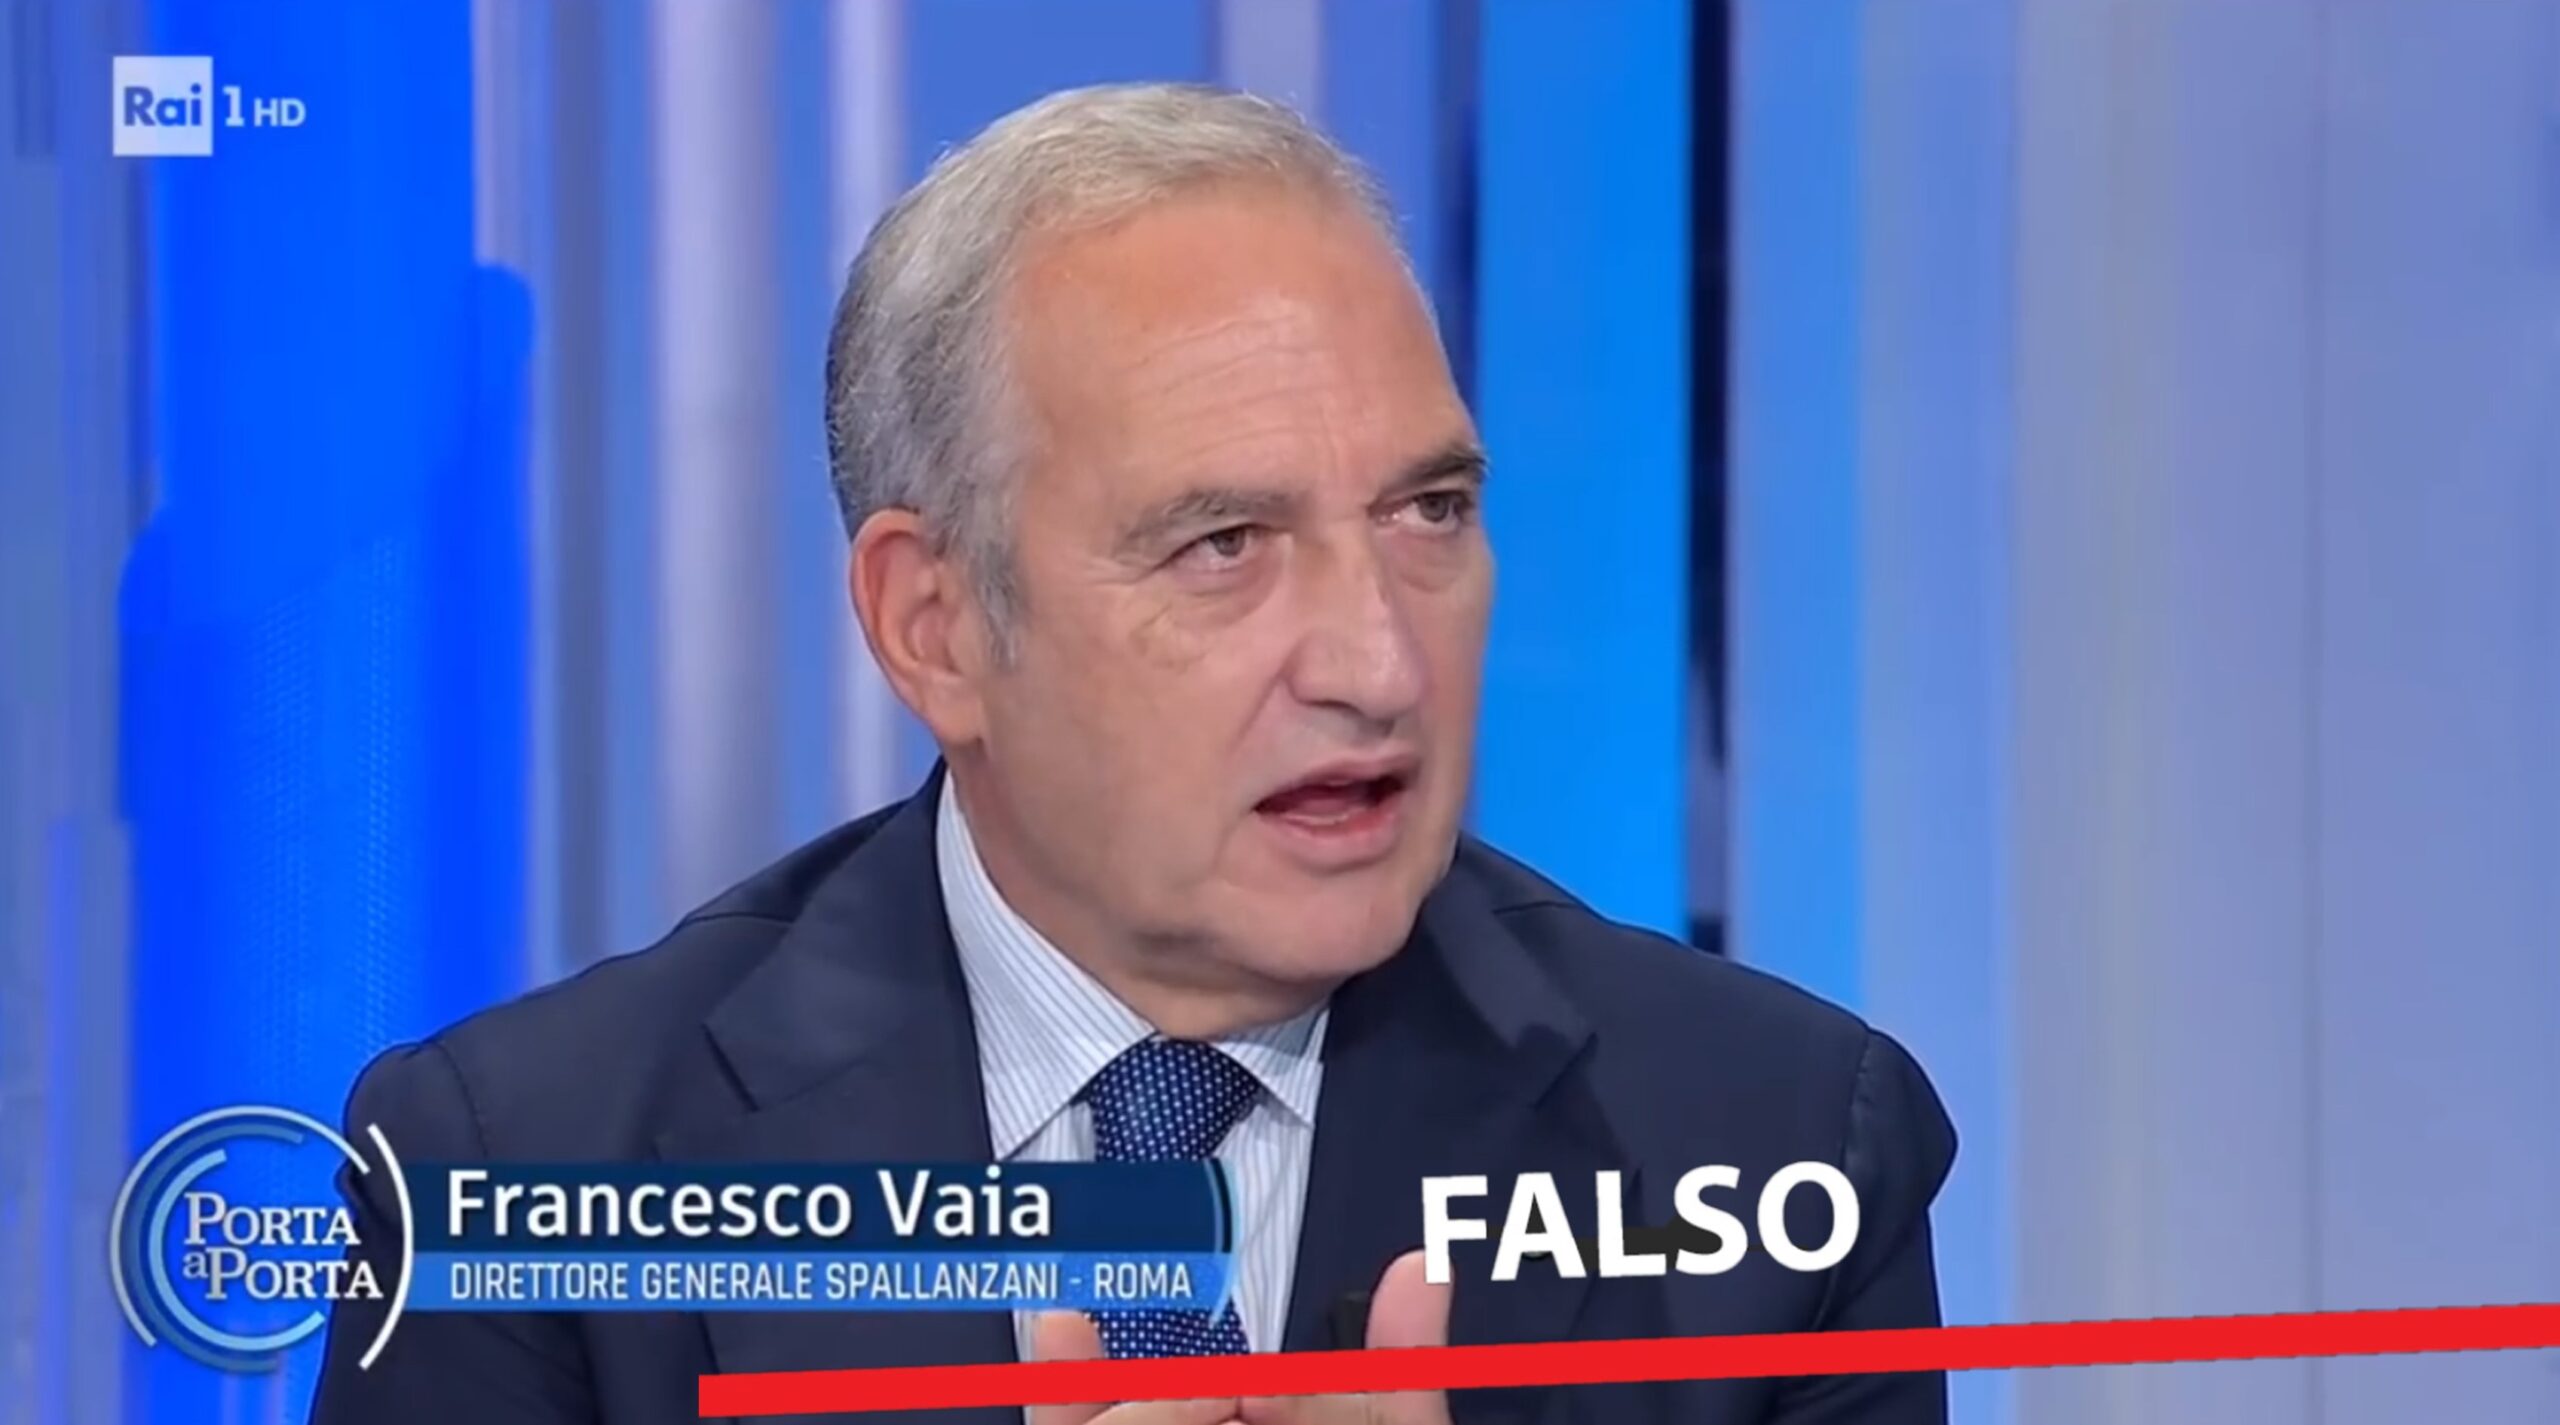 Francesco Vaia: “nessuno si è sognato di dire che i vaccini prevenivano il contagio” – FALSO